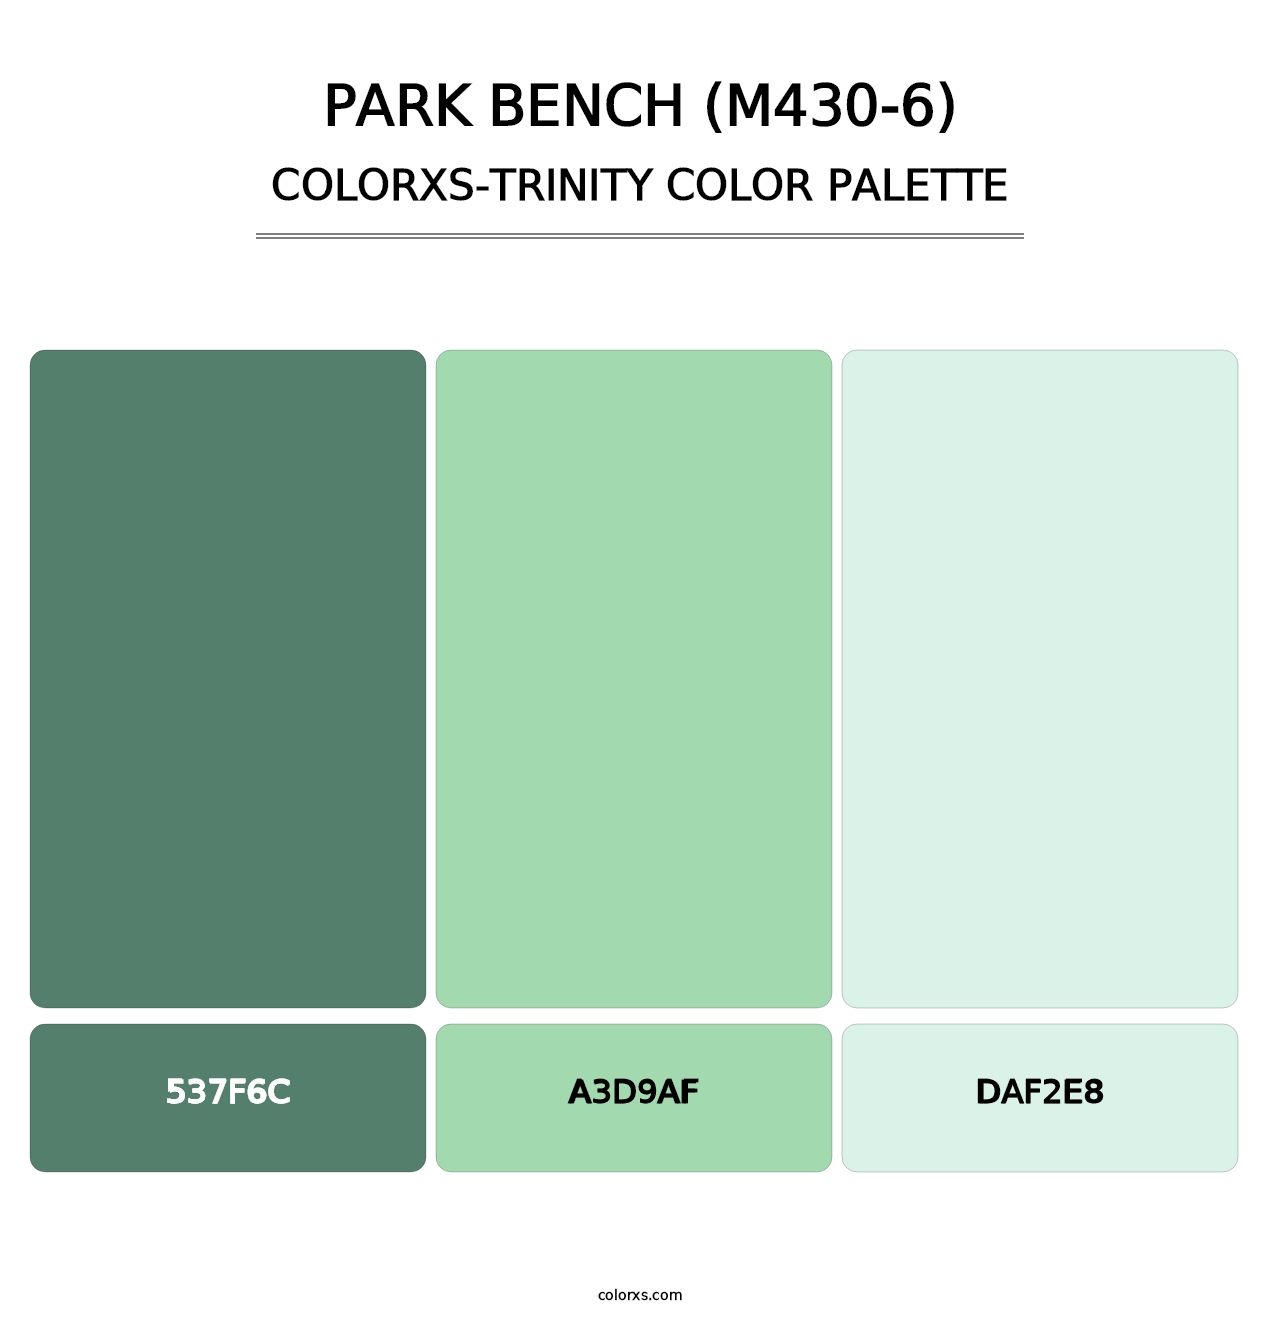 Park Bench (M430-6) - Colorxs Trinity Palette